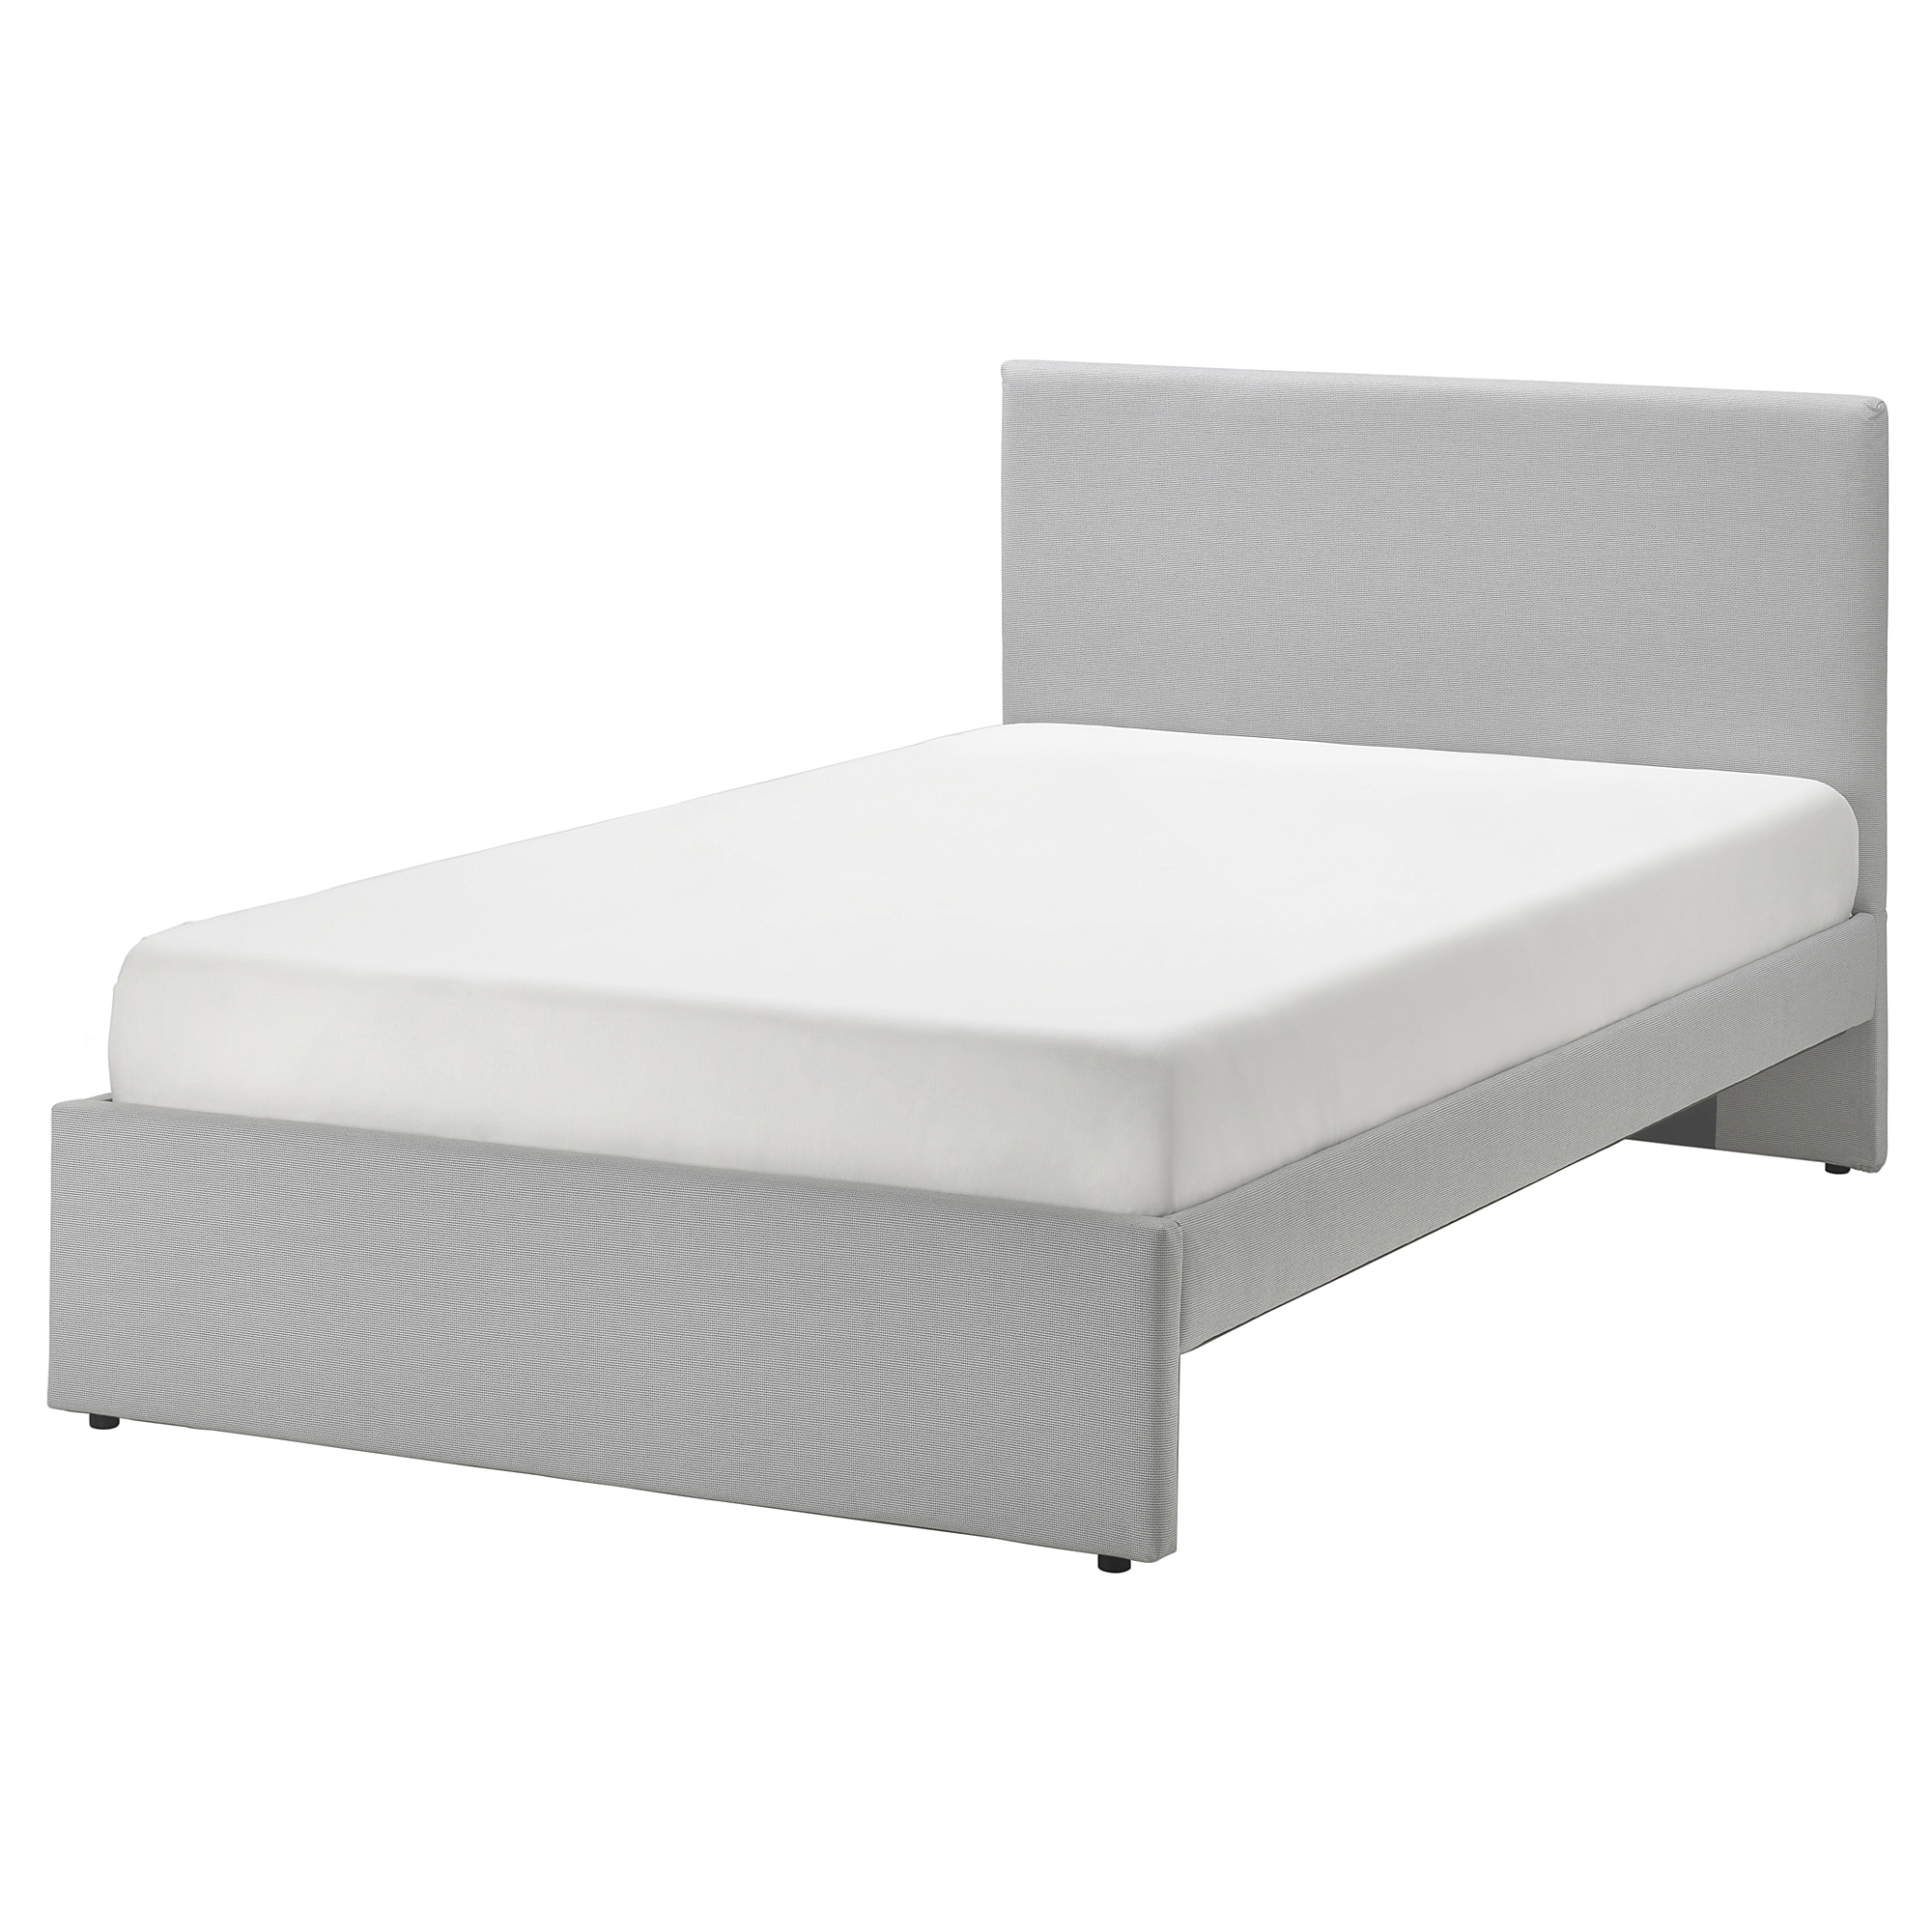 GLADSTAD upholstered bed frame